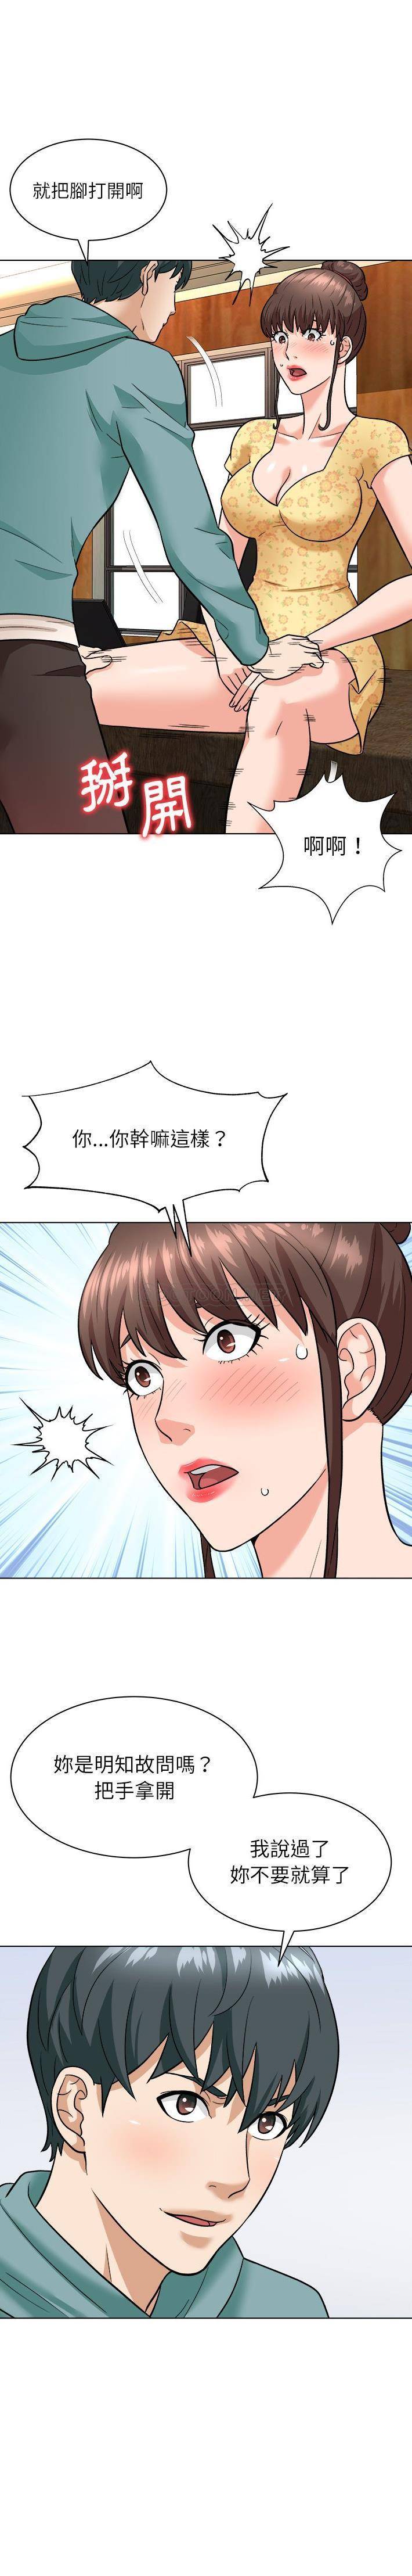 韩国污漫画 豪賭陷阱 第6话 8